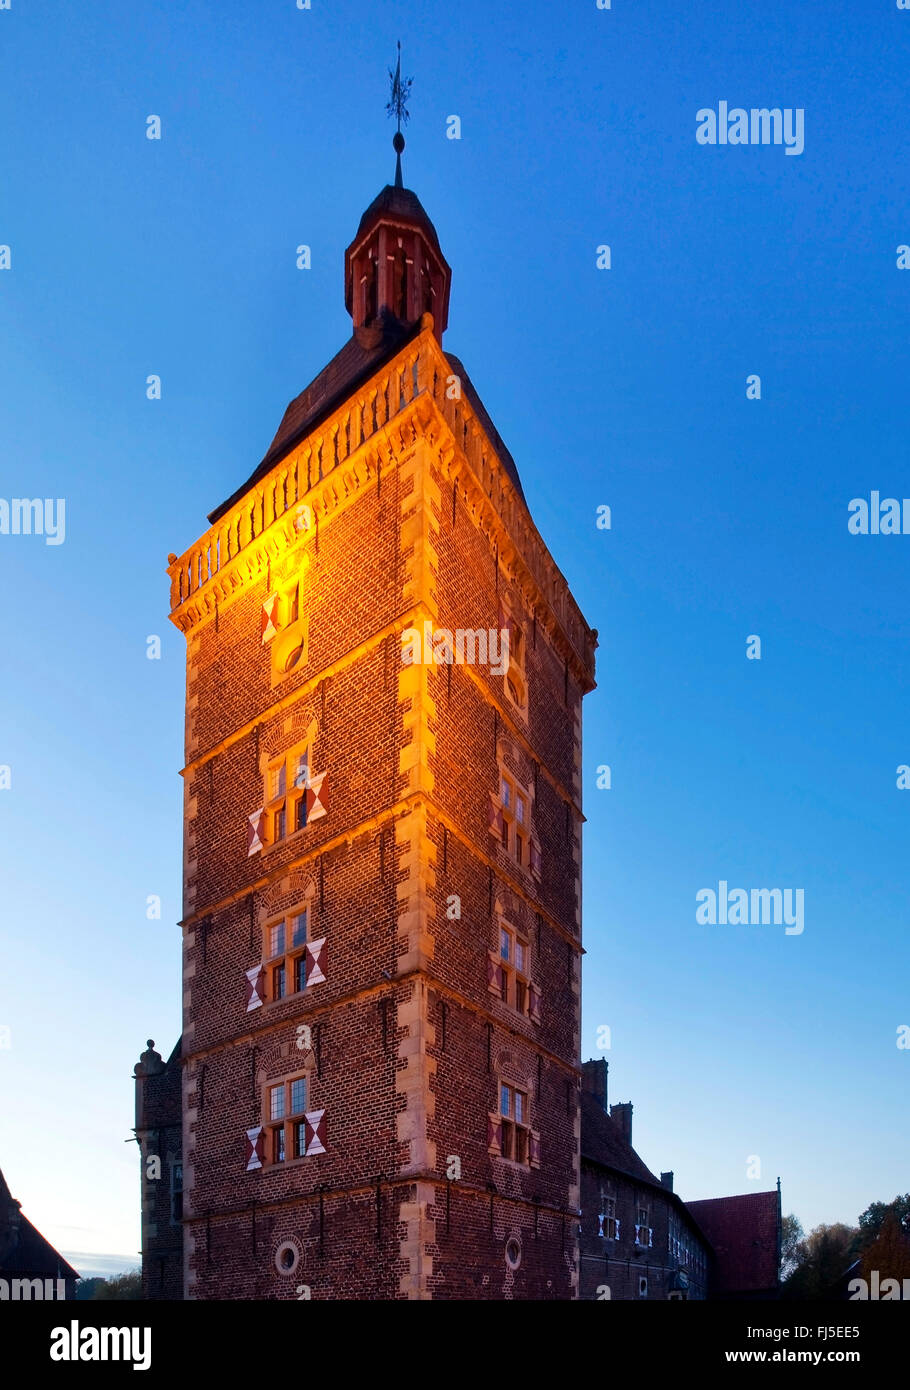 illuminated astrologers tower of Raesfeld Castle, Germany, North Rhine-Westphalia, Muensterland, Raesfeld Stock Photo